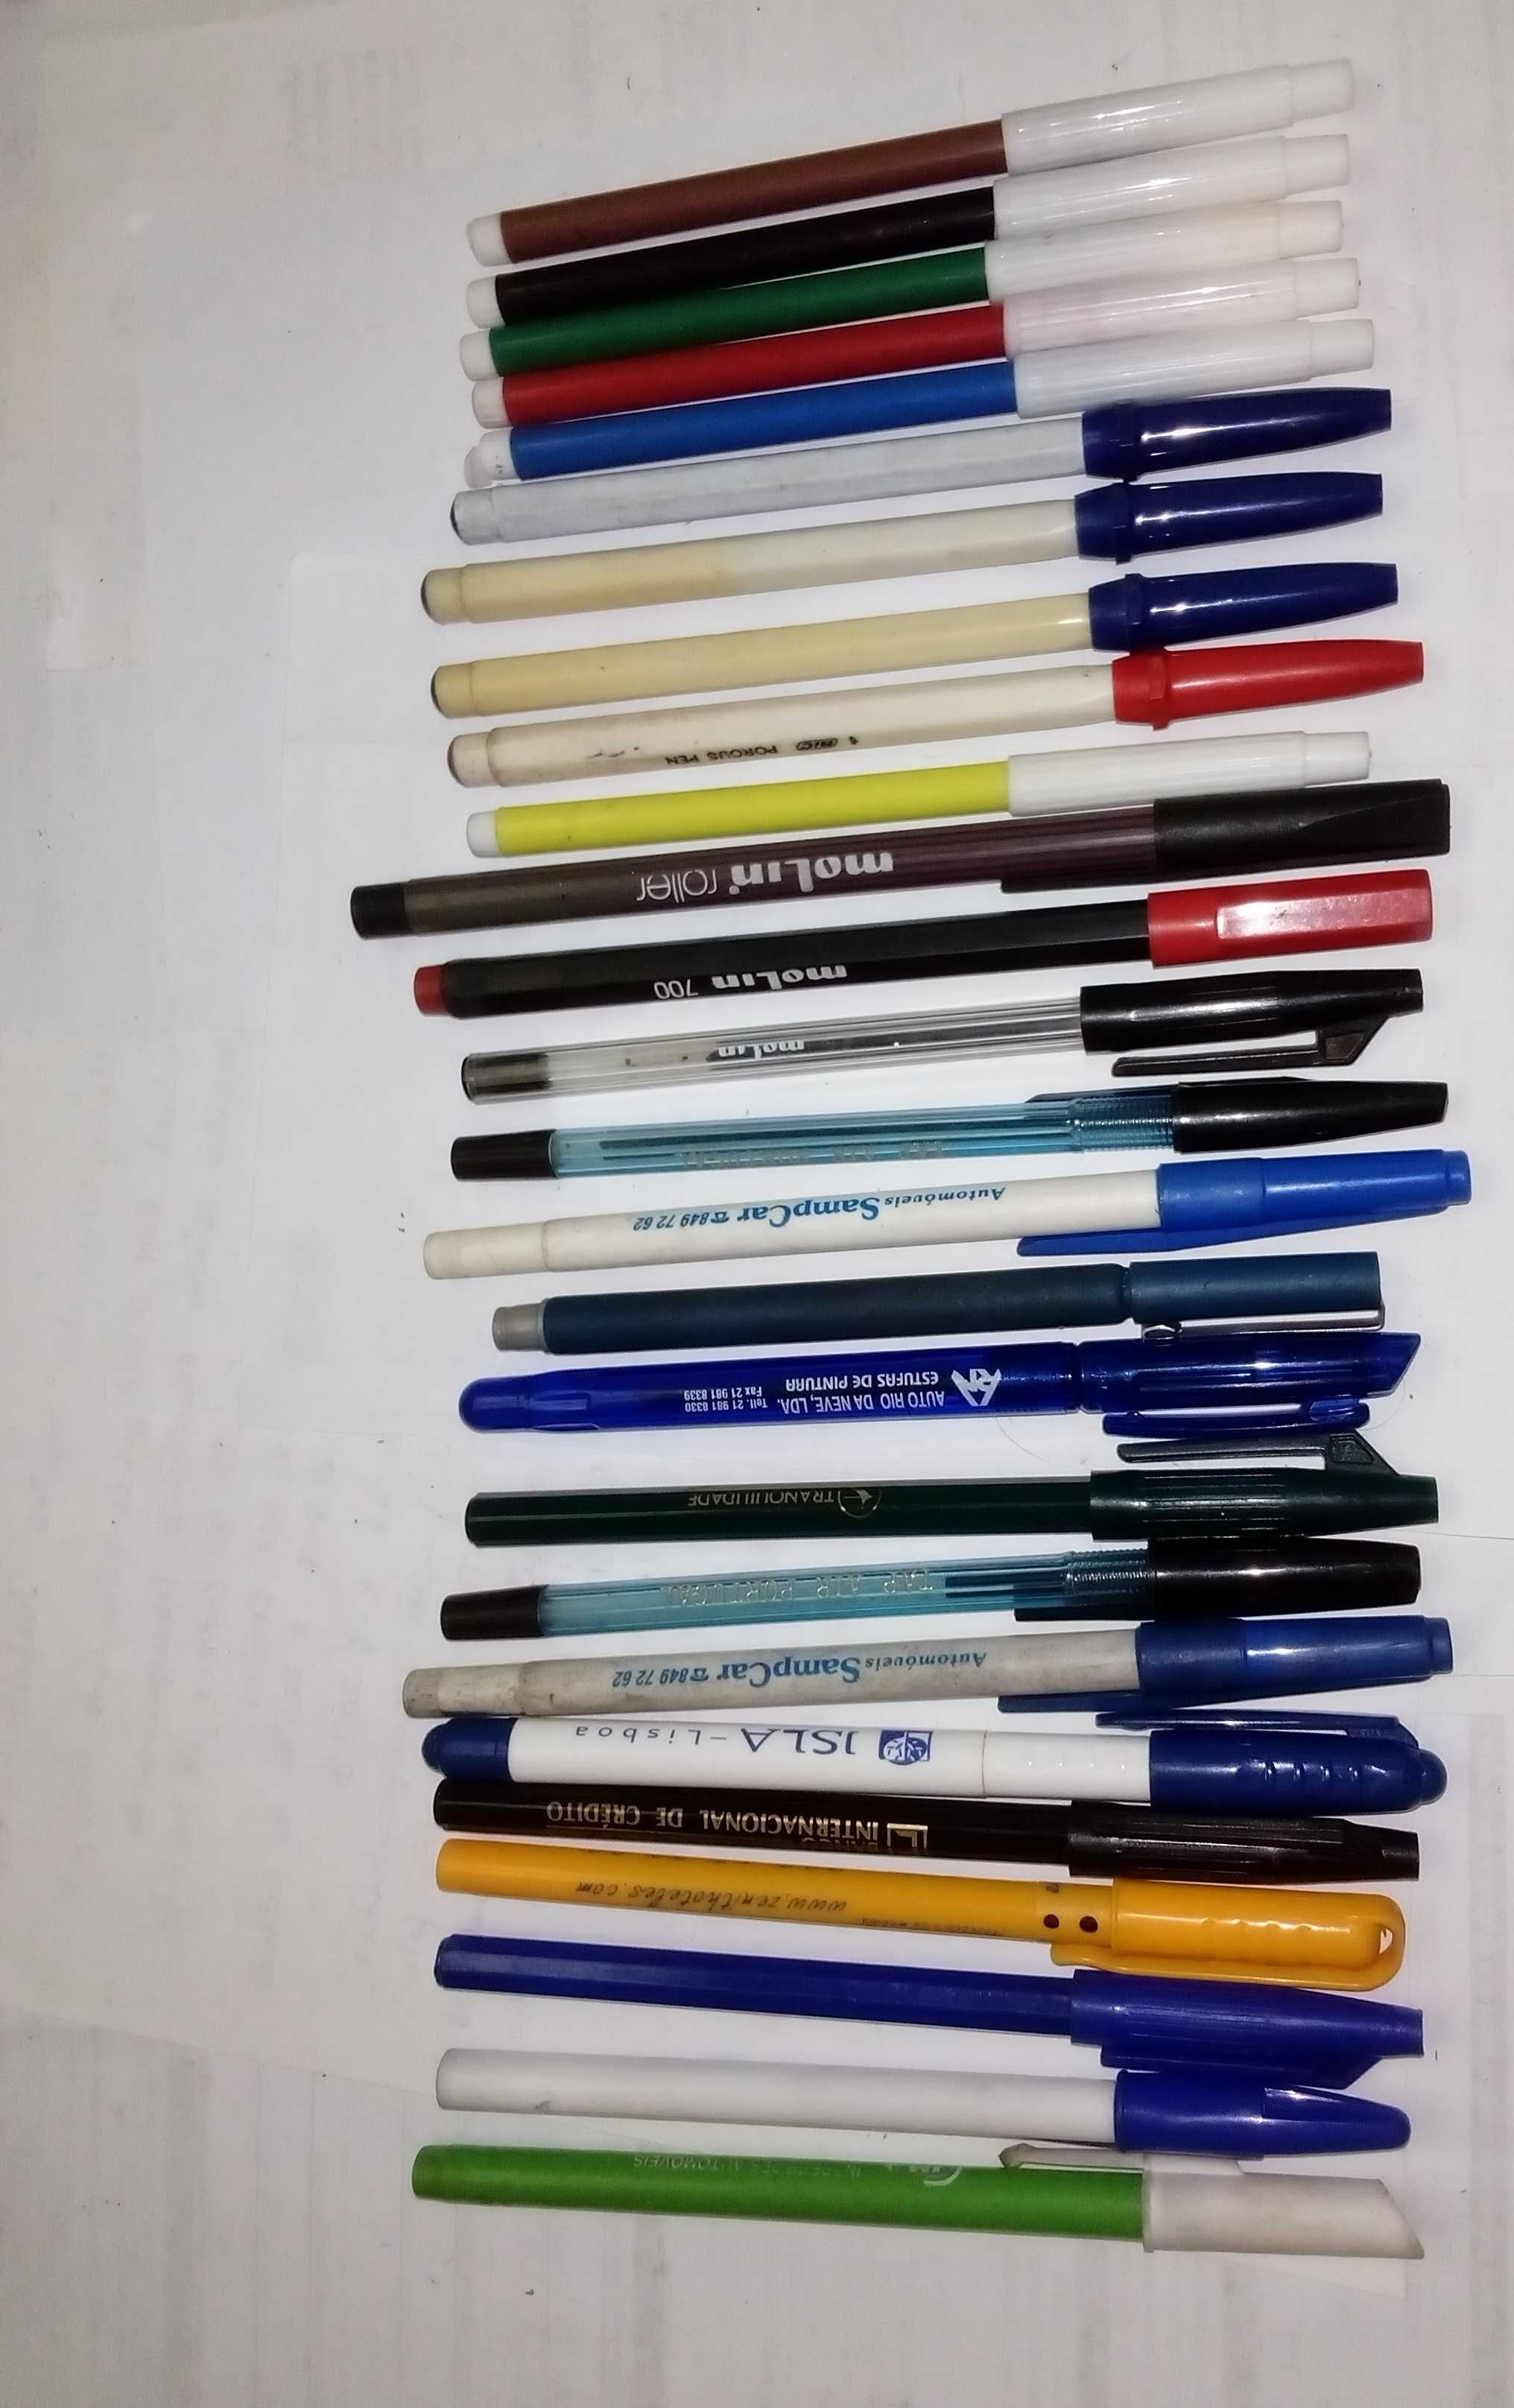 canetas para colecção